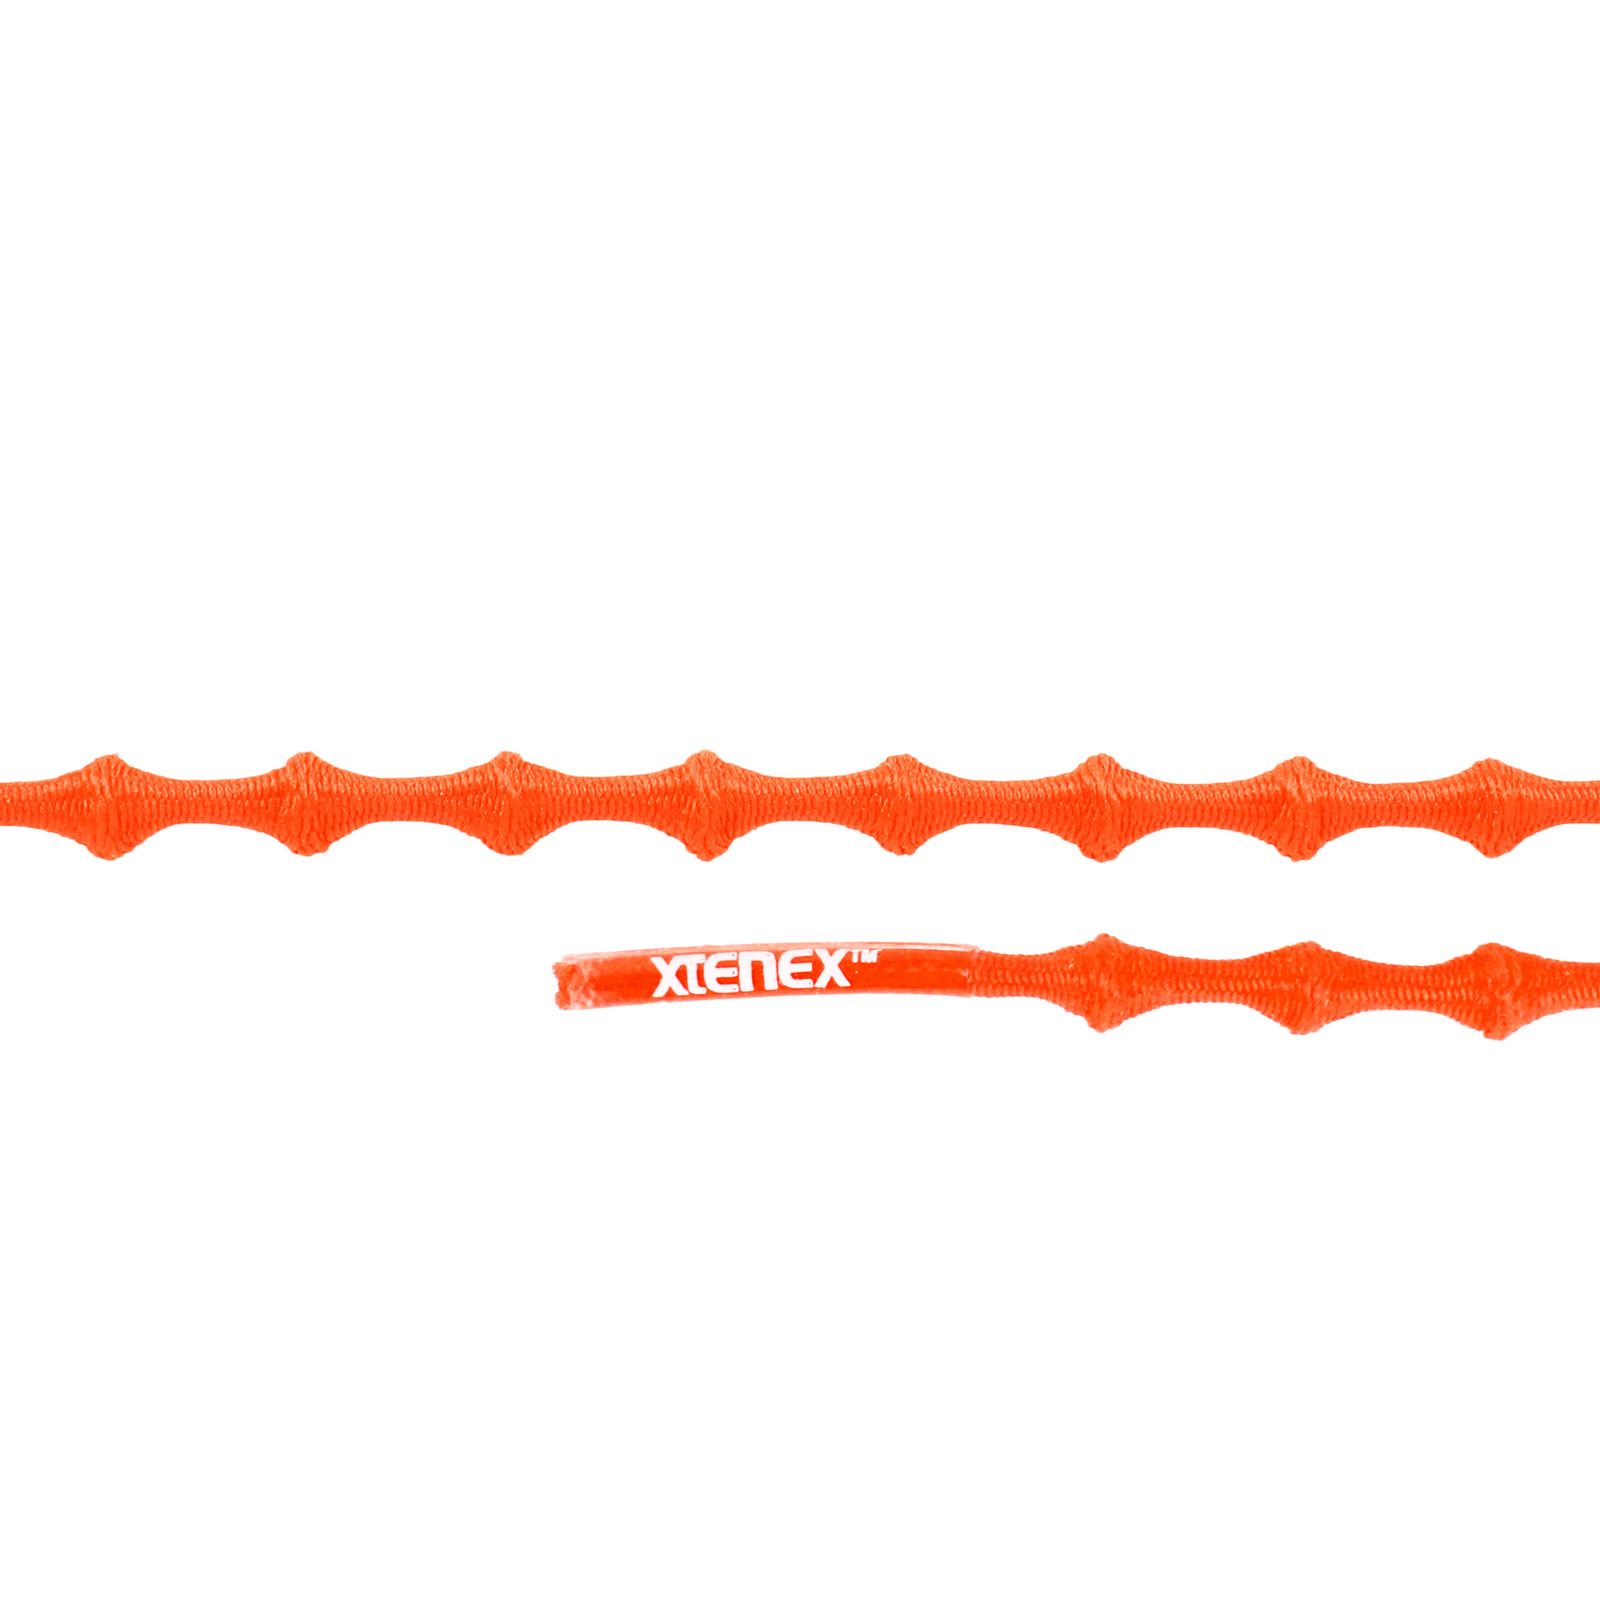 Productfoto van Xtenex Kids Veters - 50cm - oranje